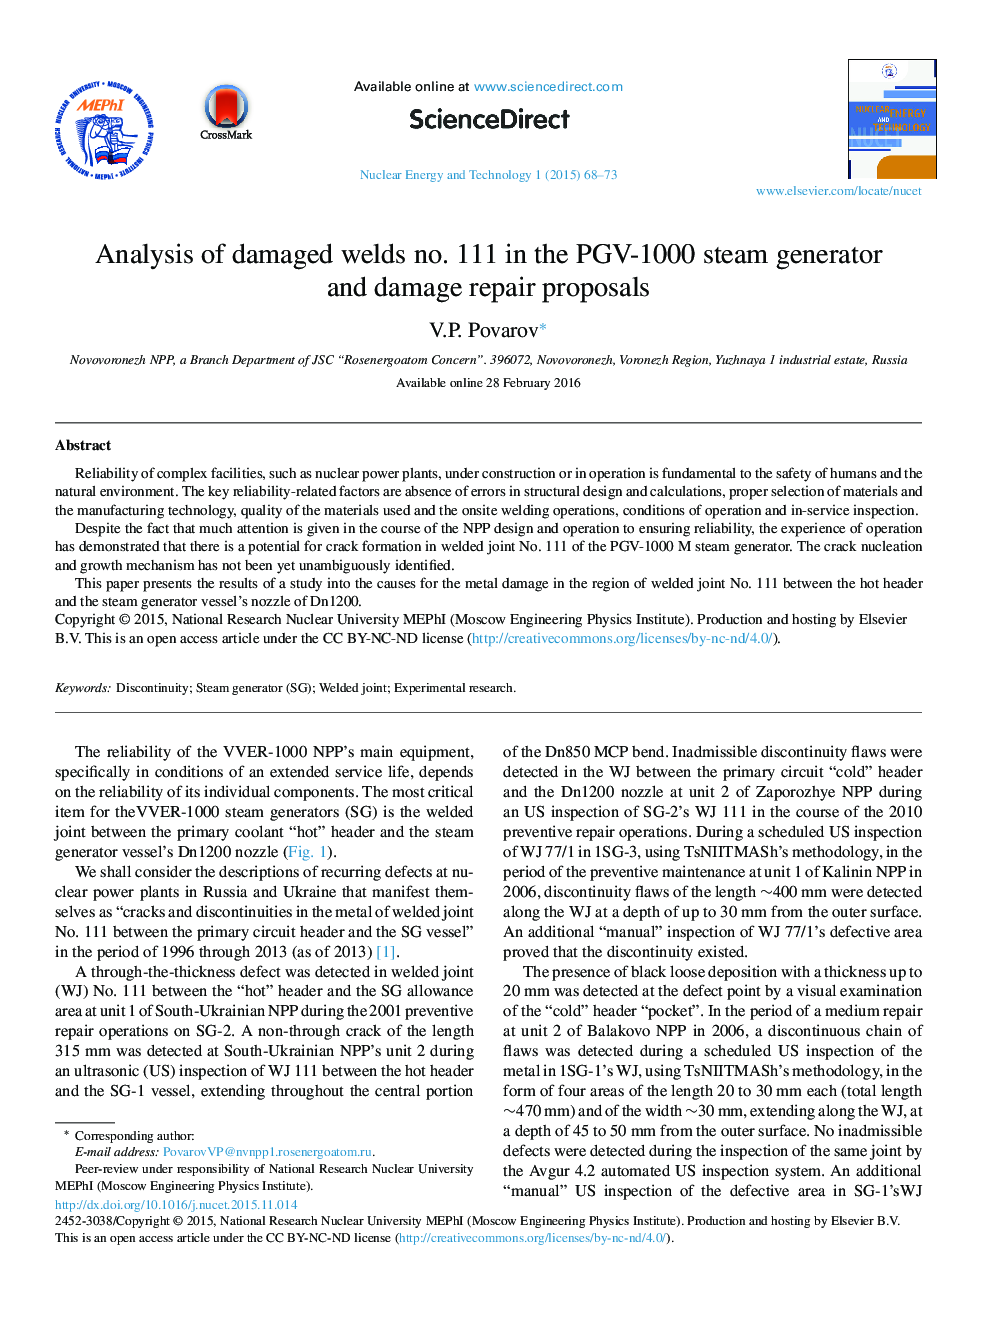 تجزیه و تحلیل جوش آسیب دیده شماره 111 در مولد بخار PGV-1000 و پیشنهادات تعمیر آسیب ها